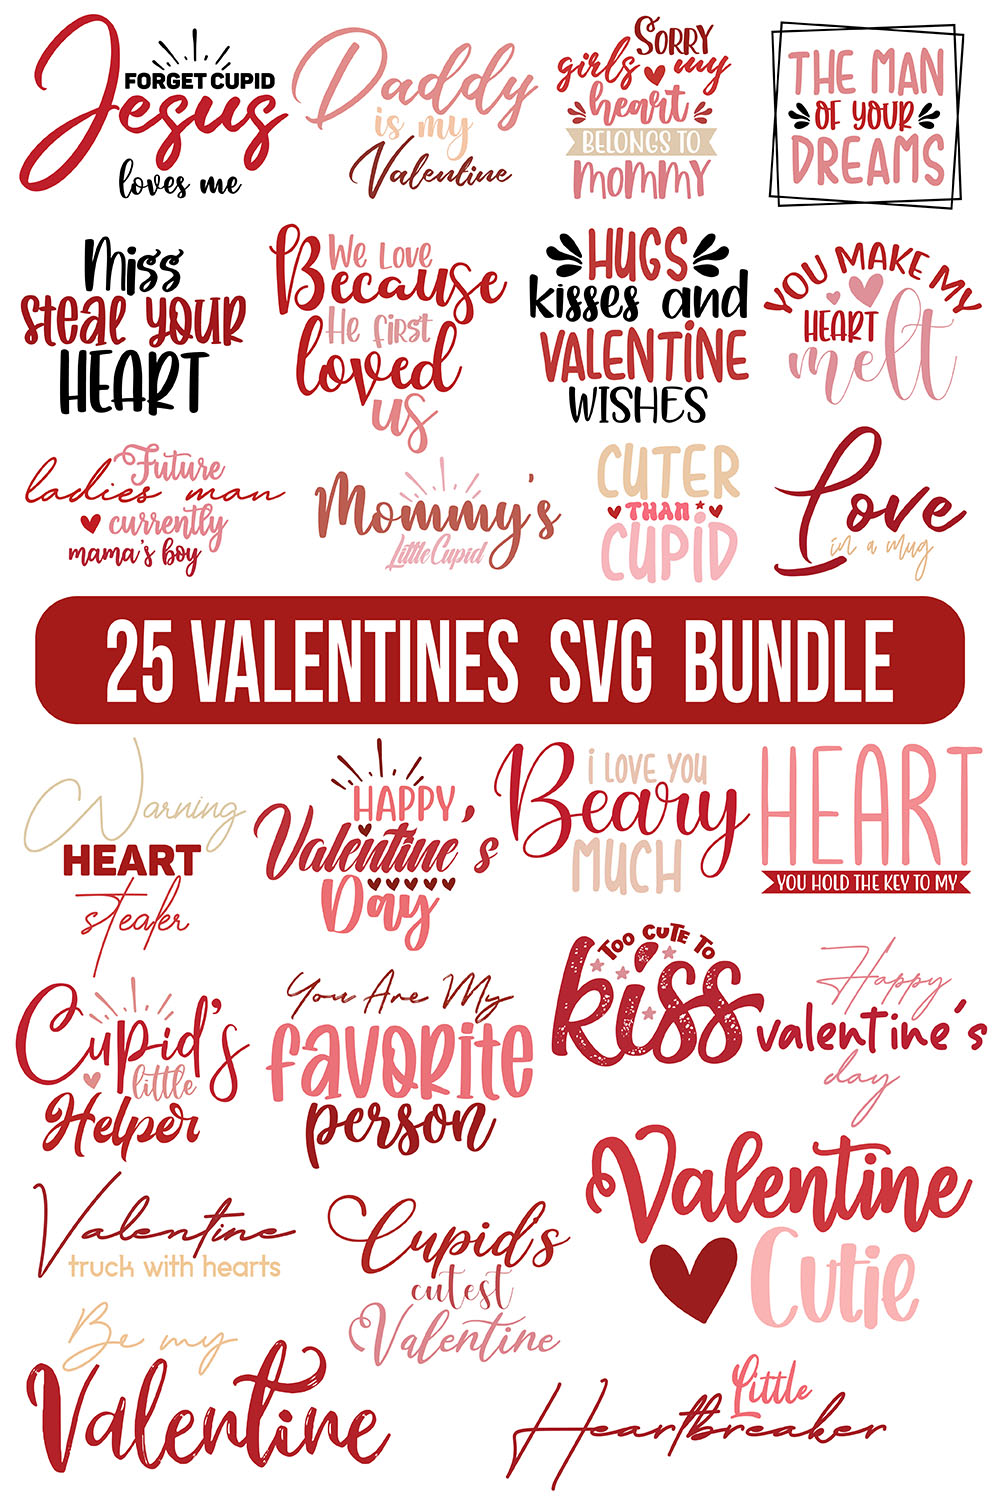 Valentines Bundle SVG Pinterest collage image.